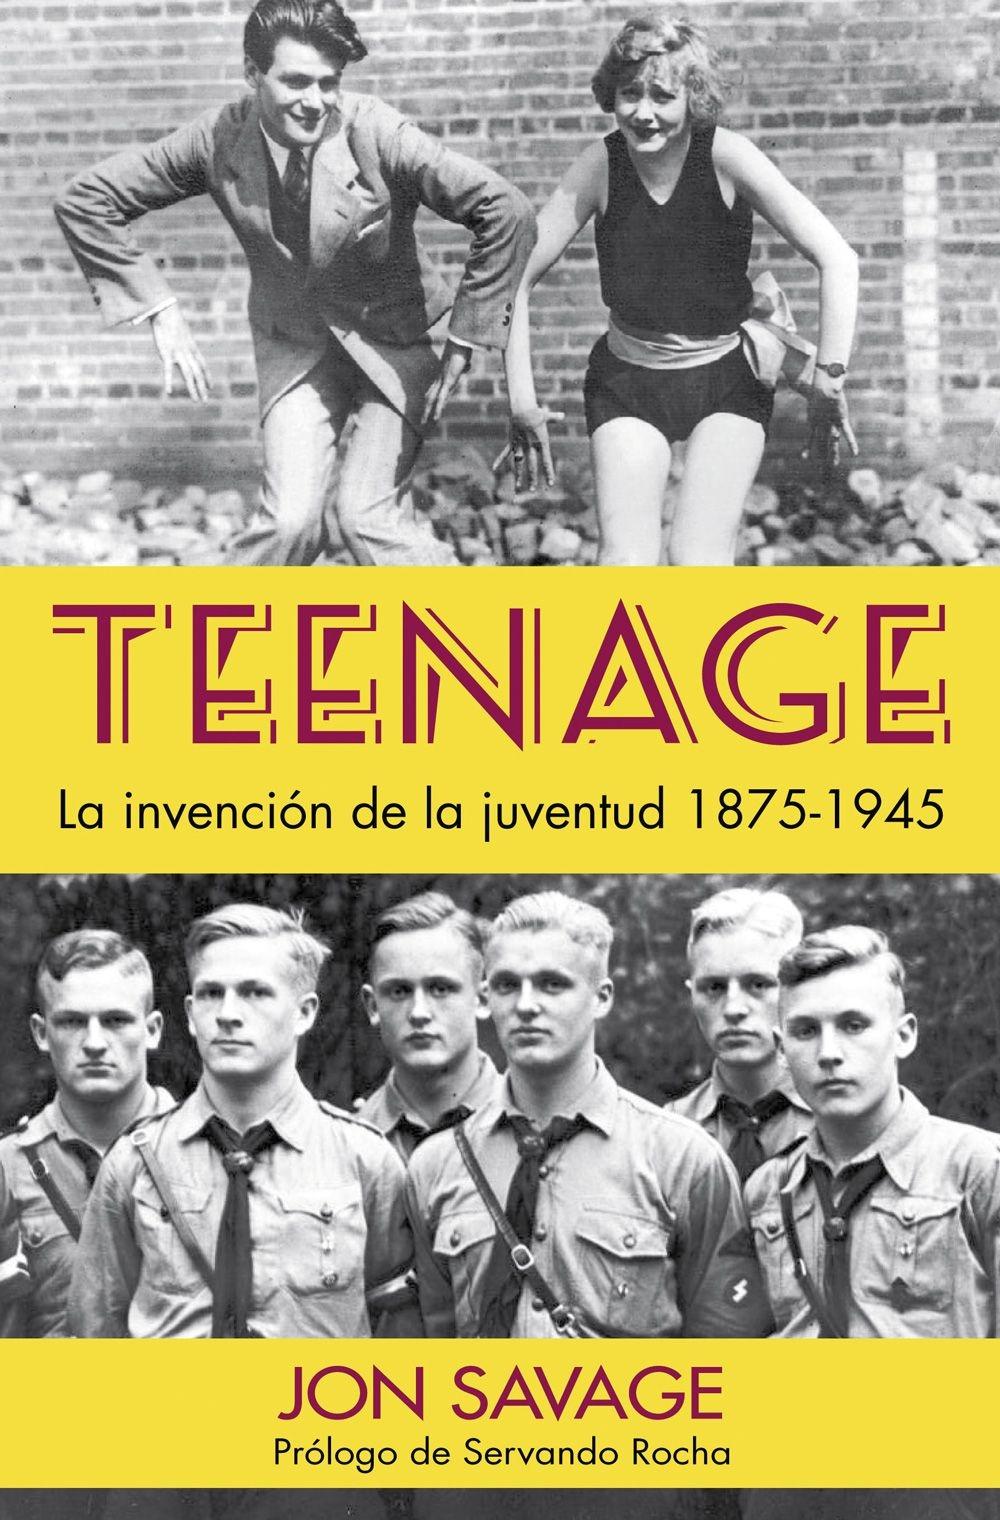 Teenage "La Invención de la Juventud, 1875-1945"